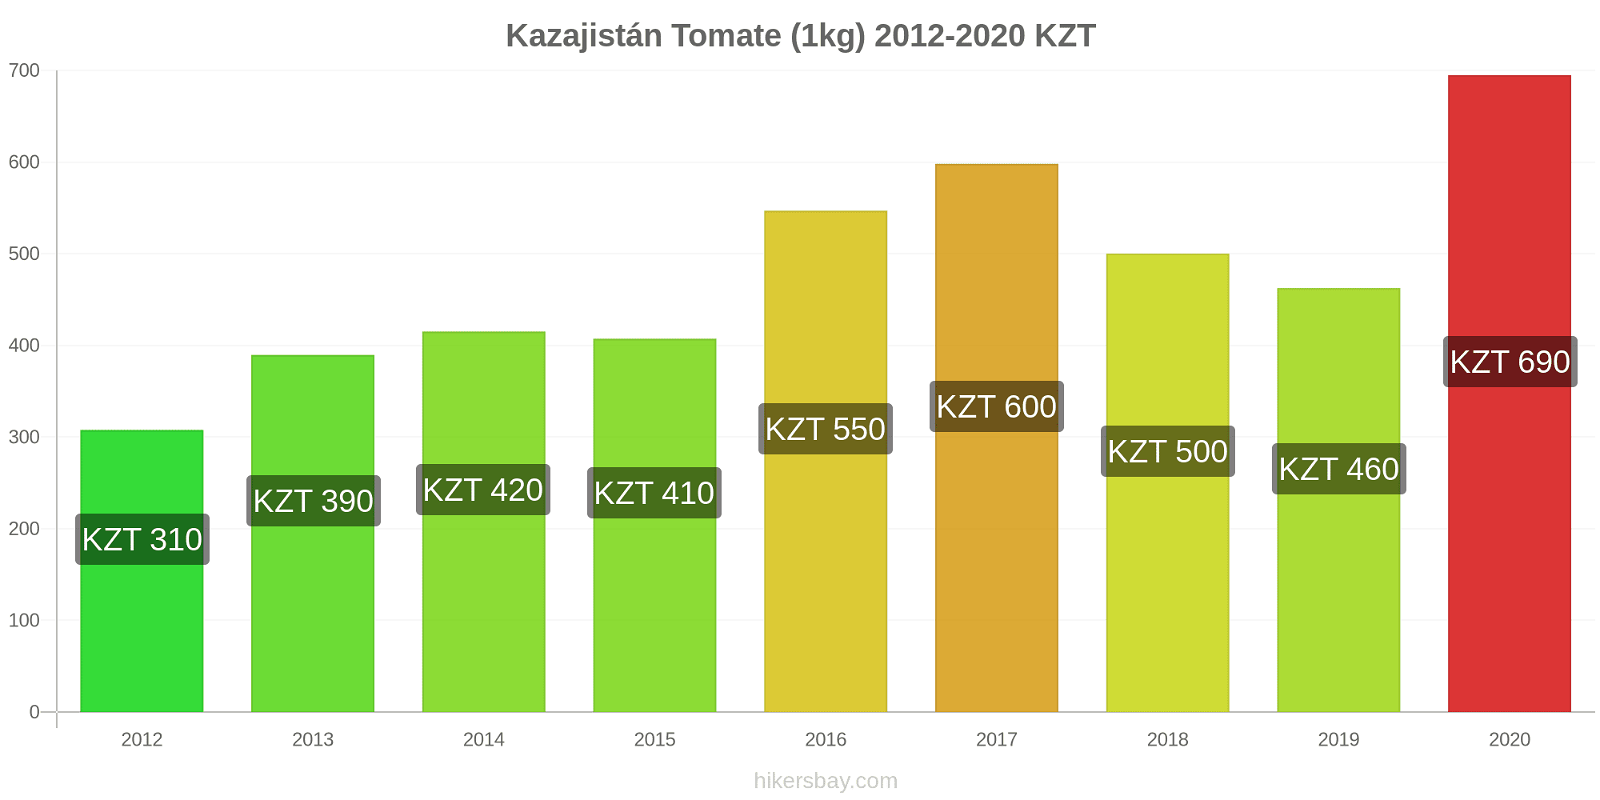 Kazajistán cambios de precios Tomate (1kg) hikersbay.com